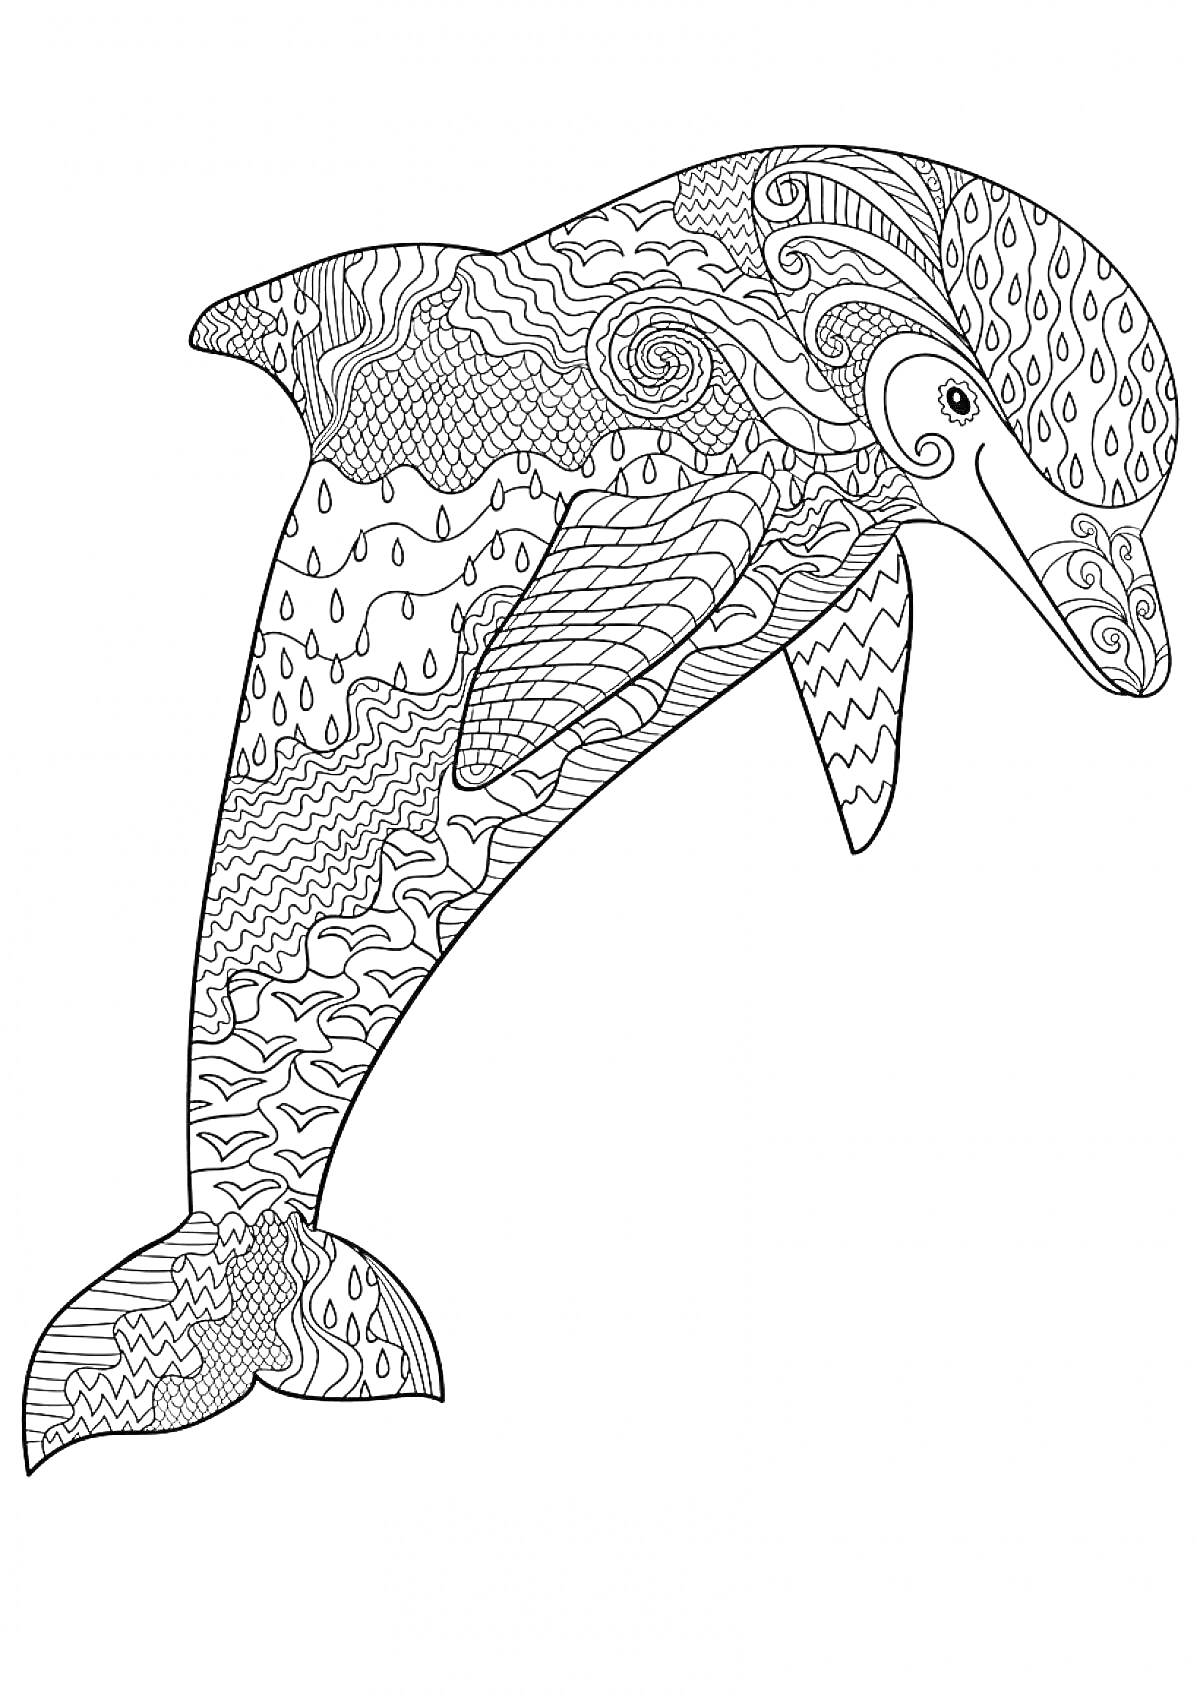 Раскраска Дельфин с абстрактными узорами